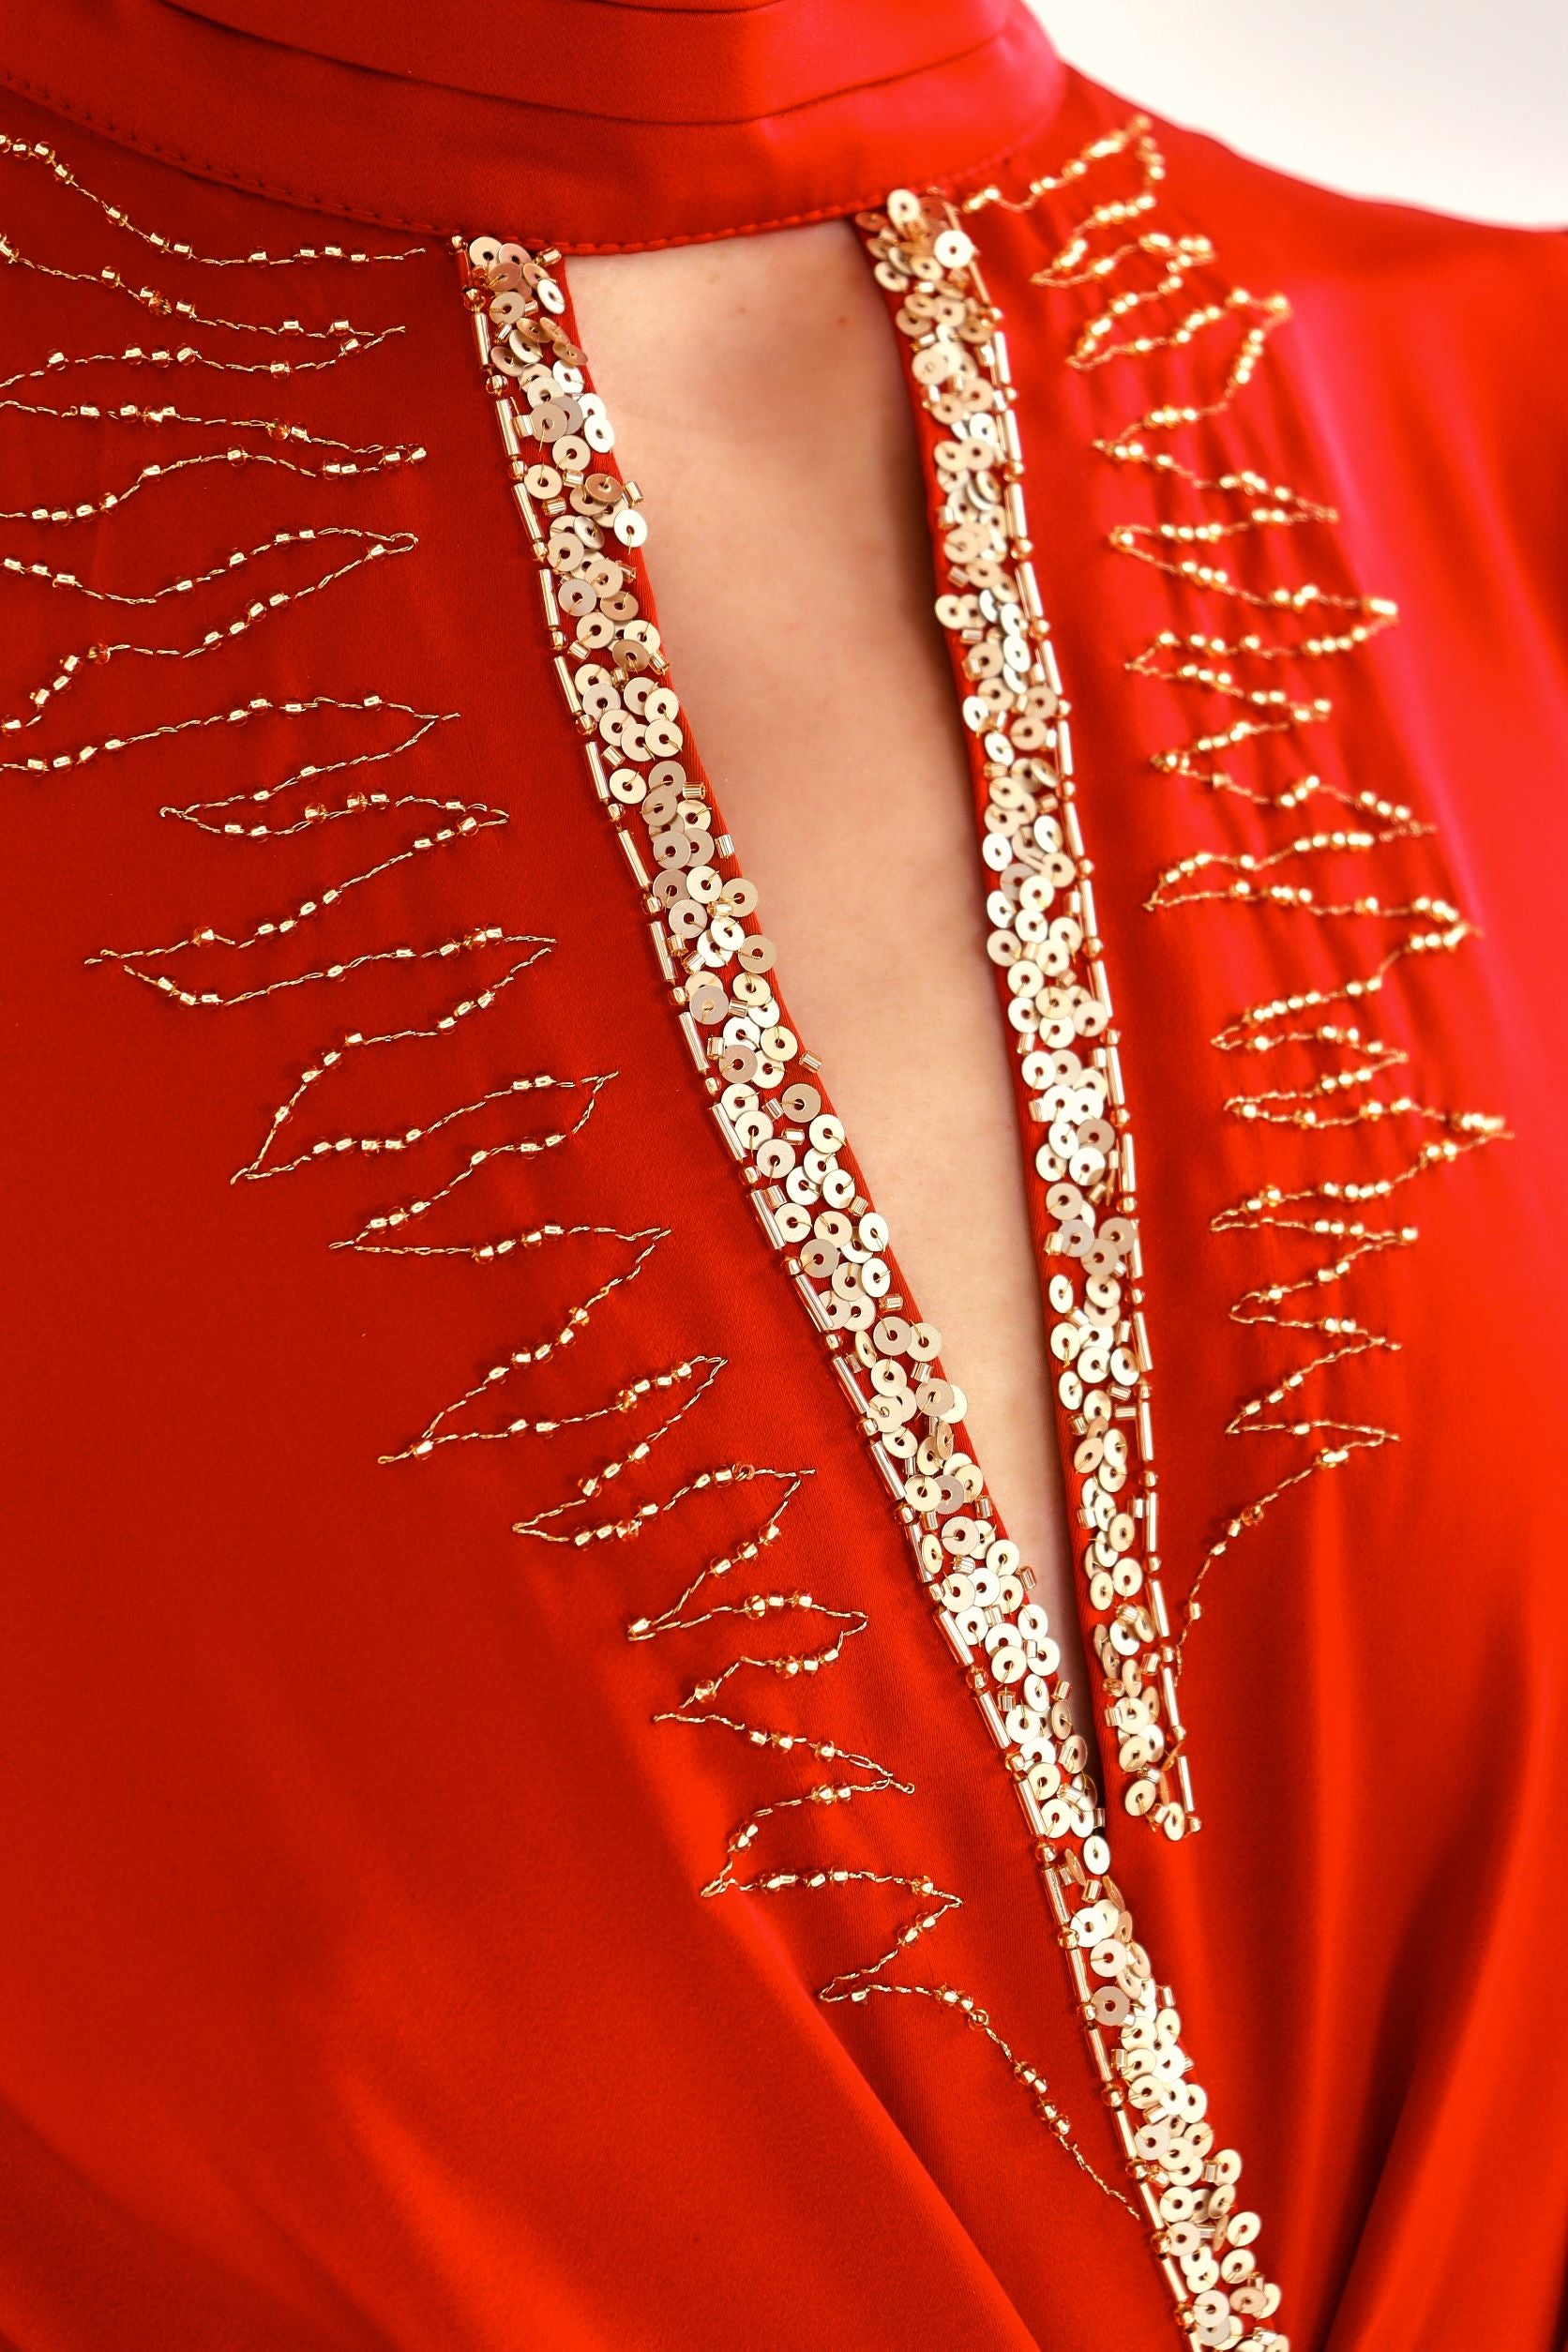 Vestido rojo con bordado a mano